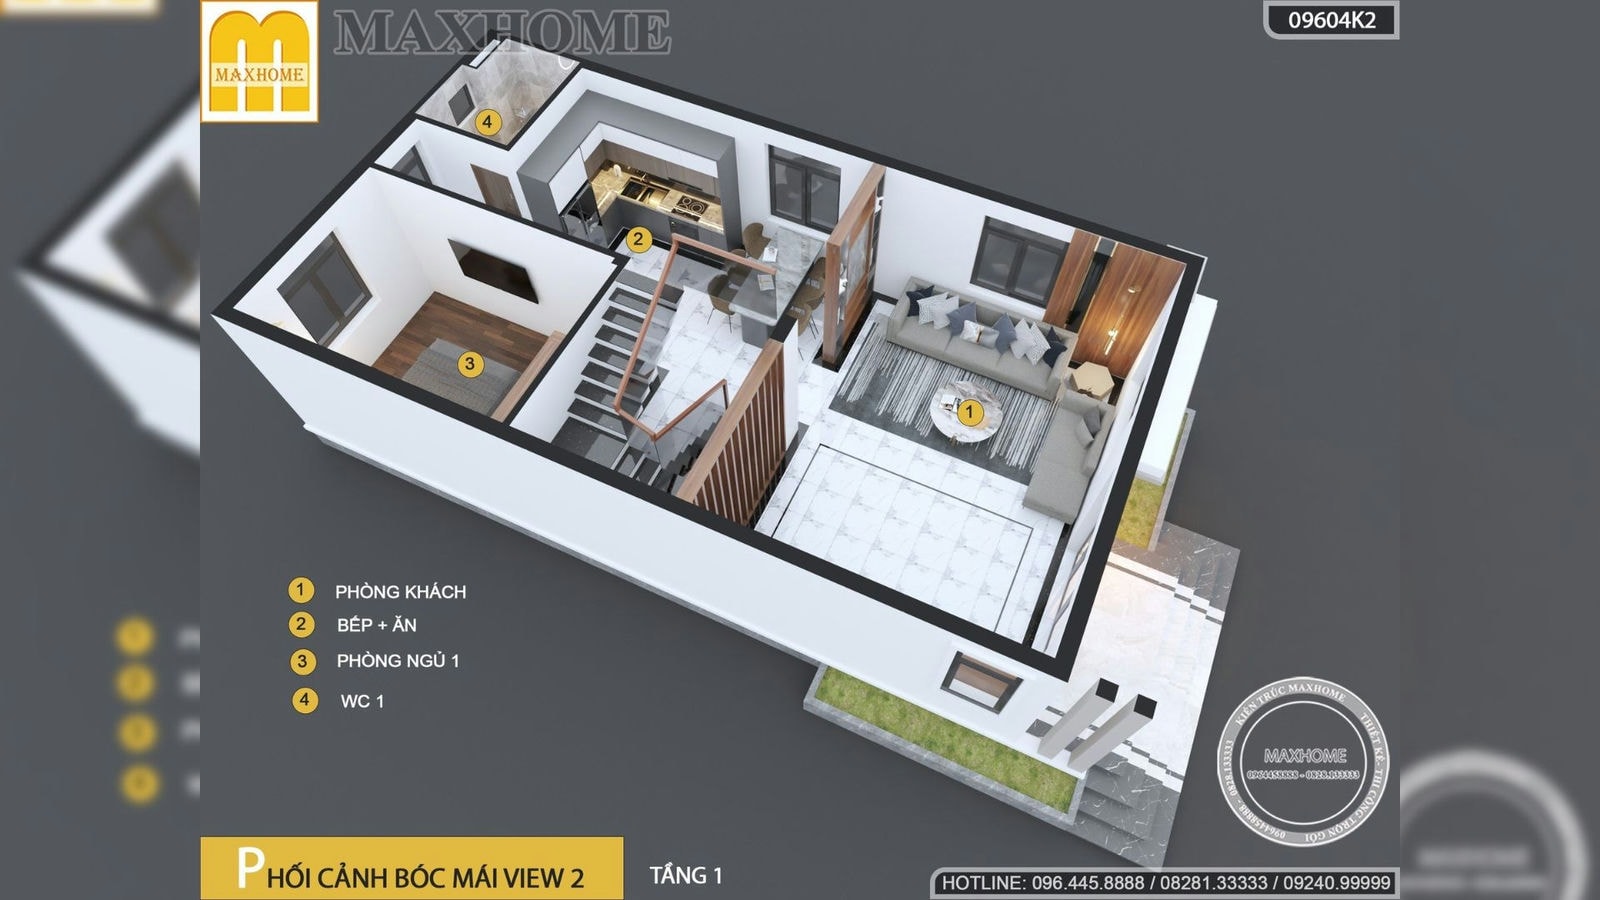 Nhà 2 tầng hiện đại 3 phòng ngủ dành cho đôi vợ chồng trẻ | MH02449